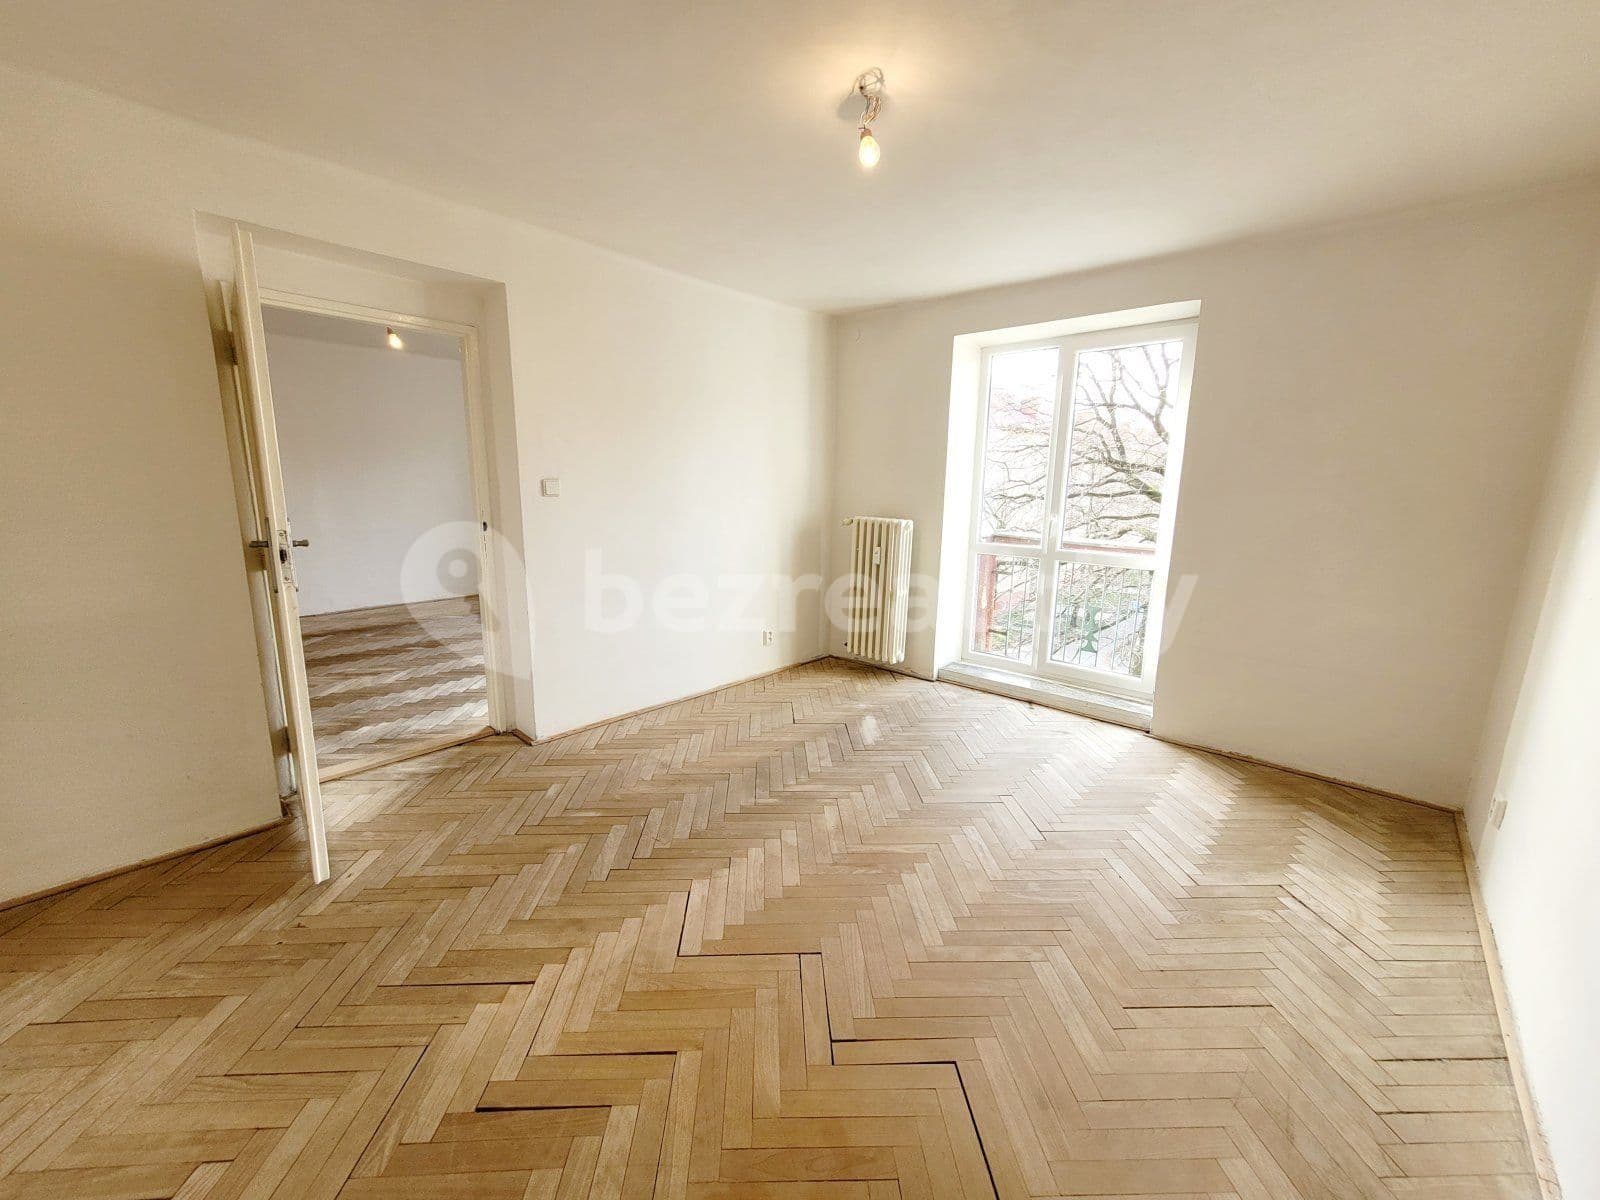 3 bedroom flat to rent, 69 m², Anglická, Havířov, Moravskoslezský Region